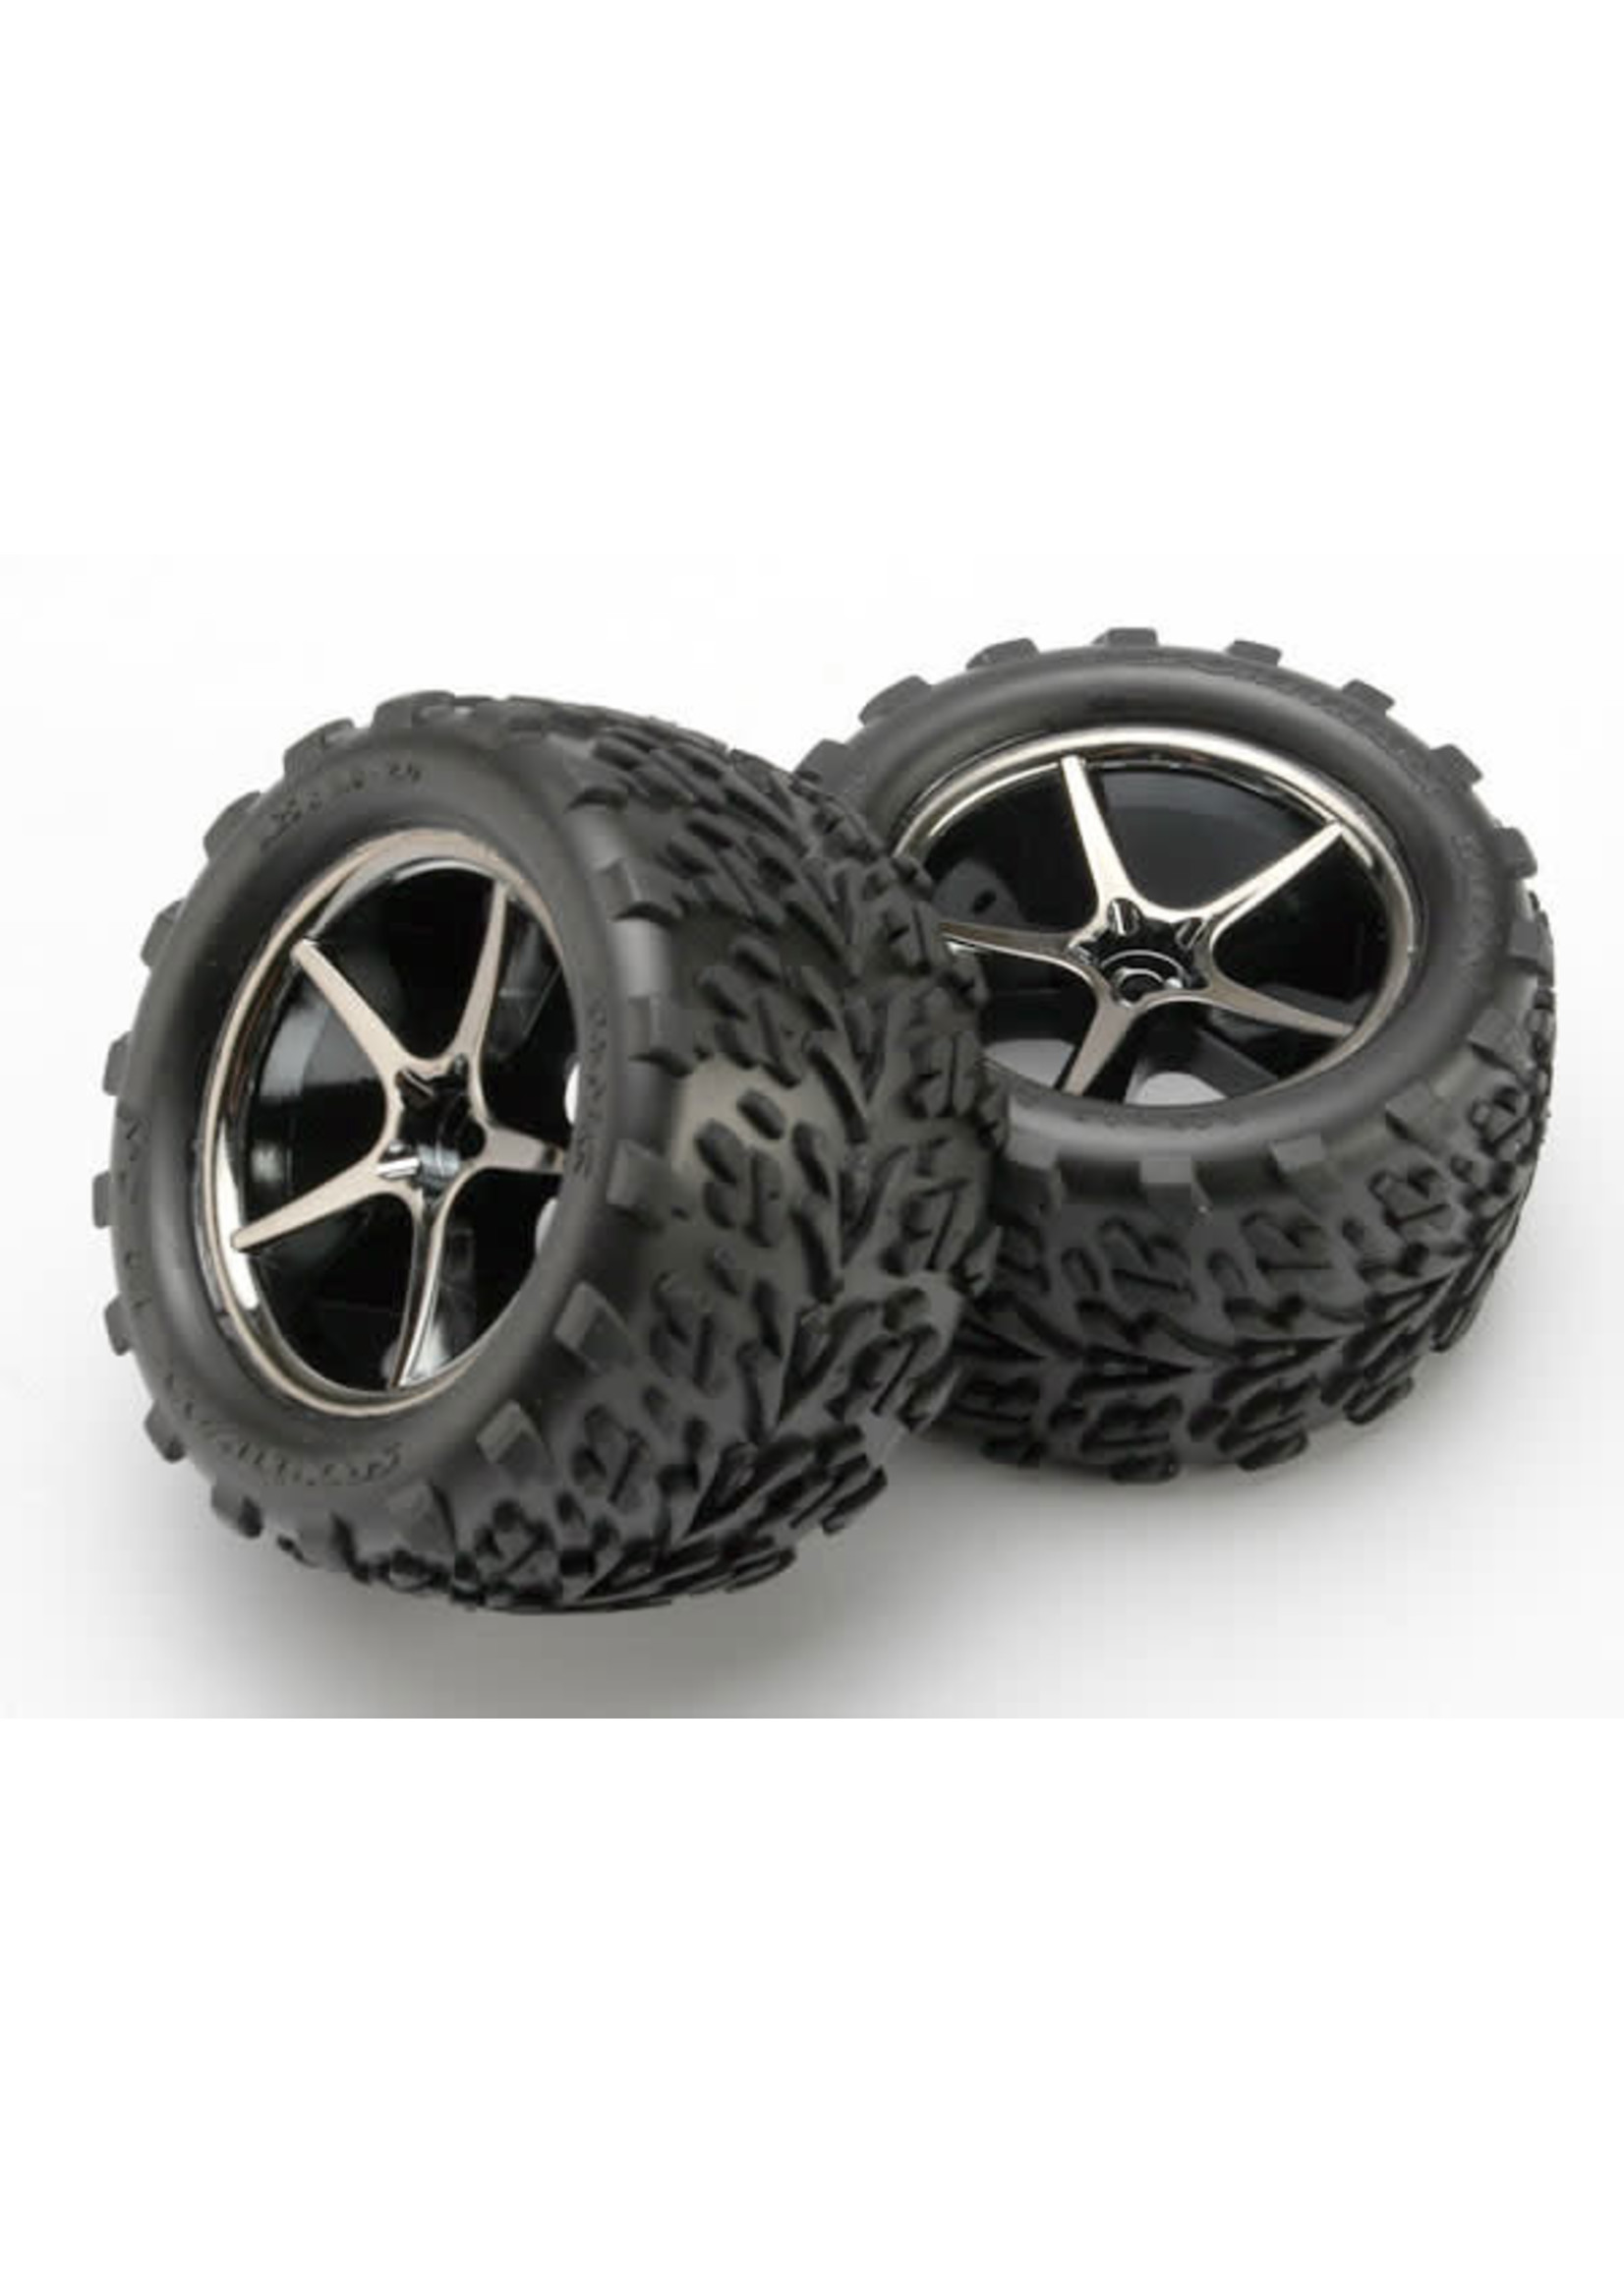 Traxxas TRA7174A Traxxas Tires and wheels, assembled, glued (Gemini black chrome wheels, Talon tires, foam inserts) (2)